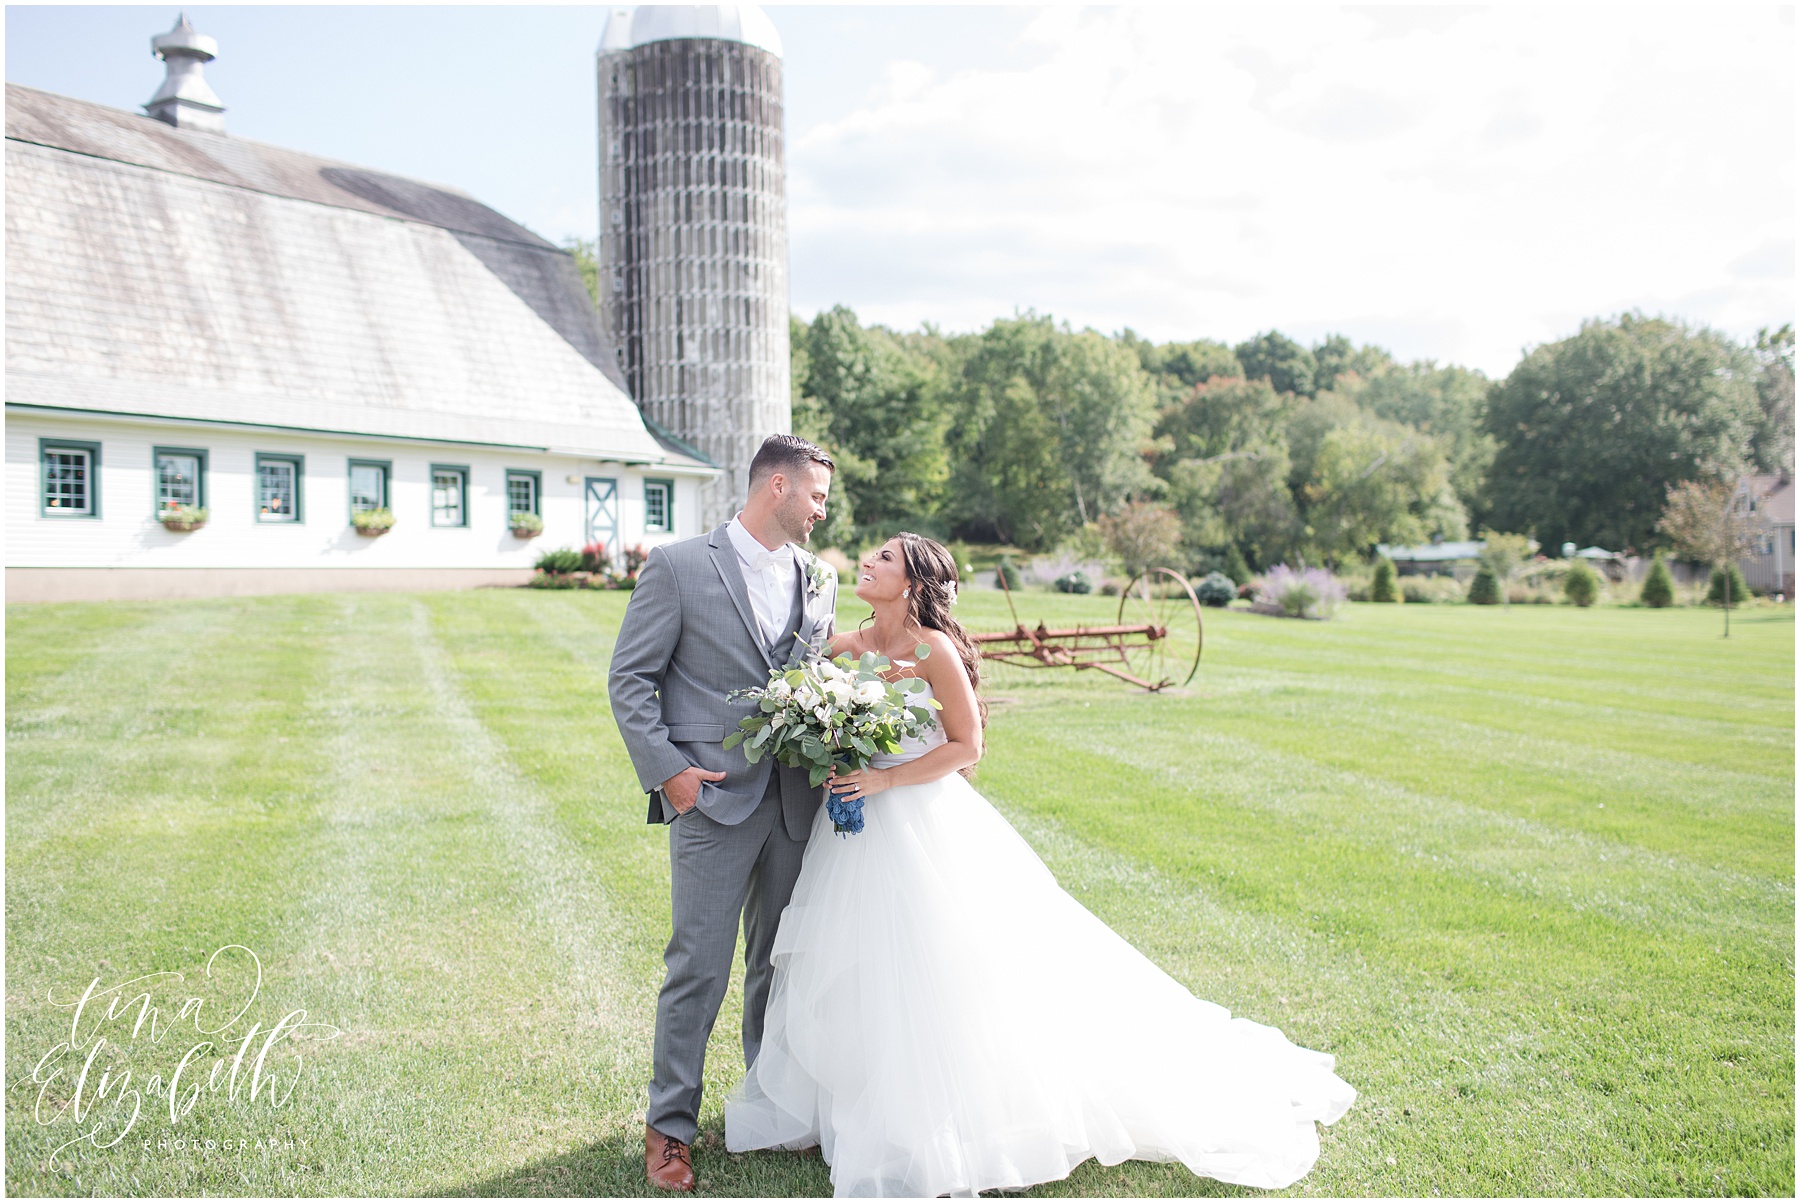 Perona farms wedding photos - Tina Elizabeth Photography